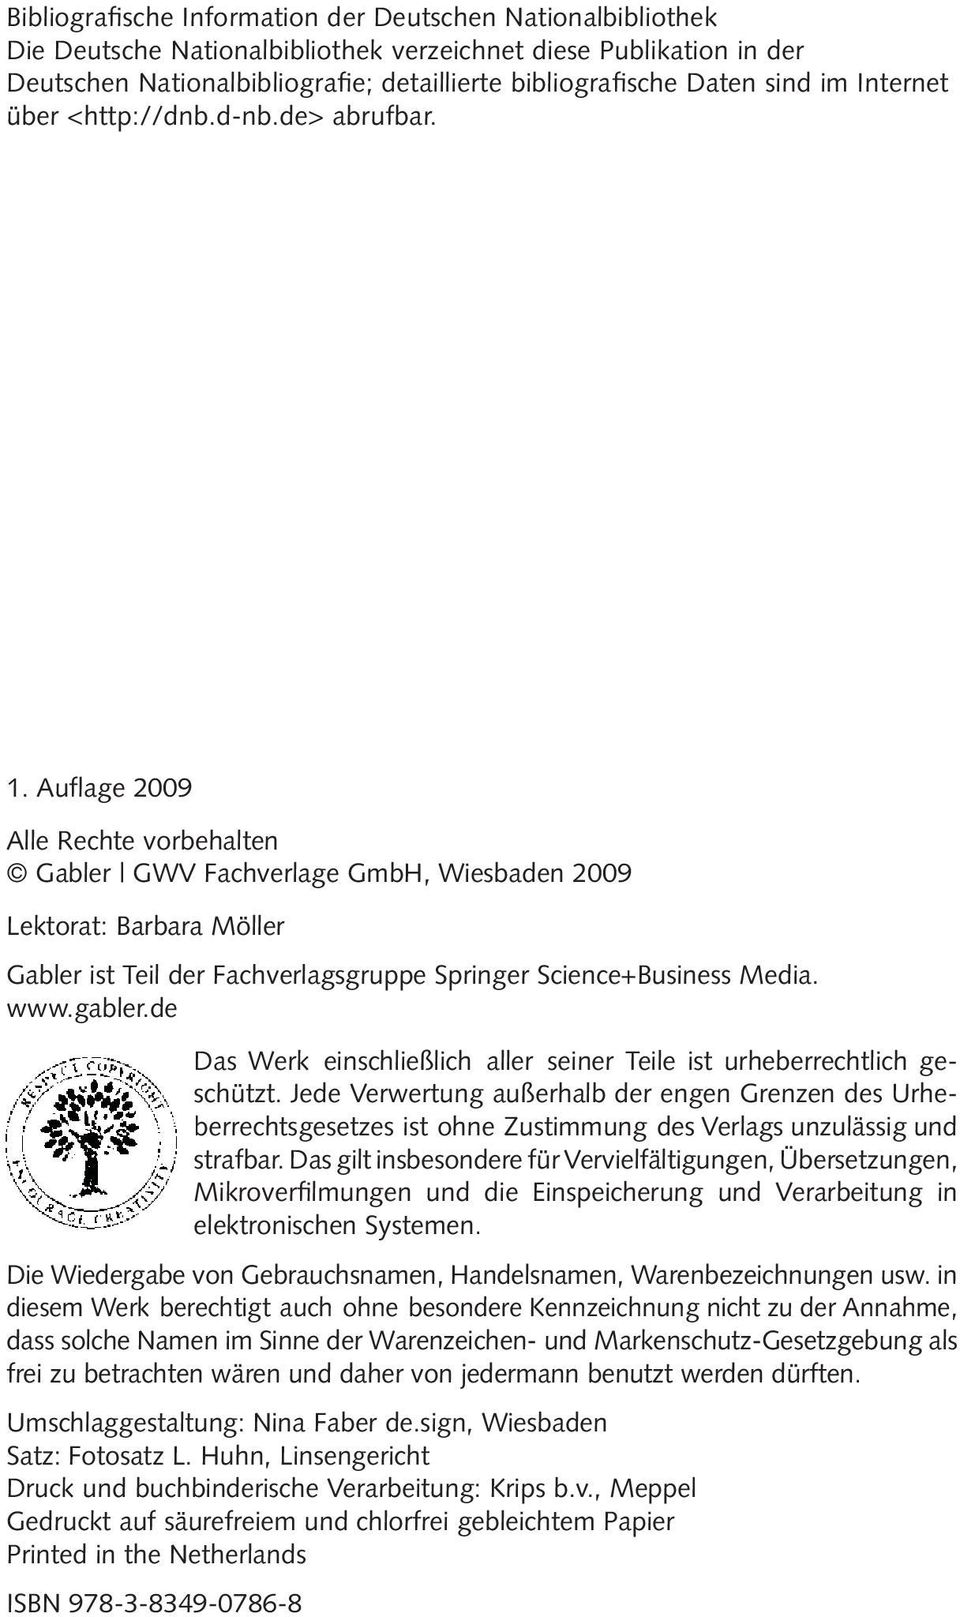 Auflage 2009 Alle Rechte vorbehalten Gabler GWV Fachverlage GmbH, Wiesbaden 2009 Lektorat: Barbara Möller Gabler ist Teil der Fachverlagsgruppe Springer Science+Business Media. www.gabler.